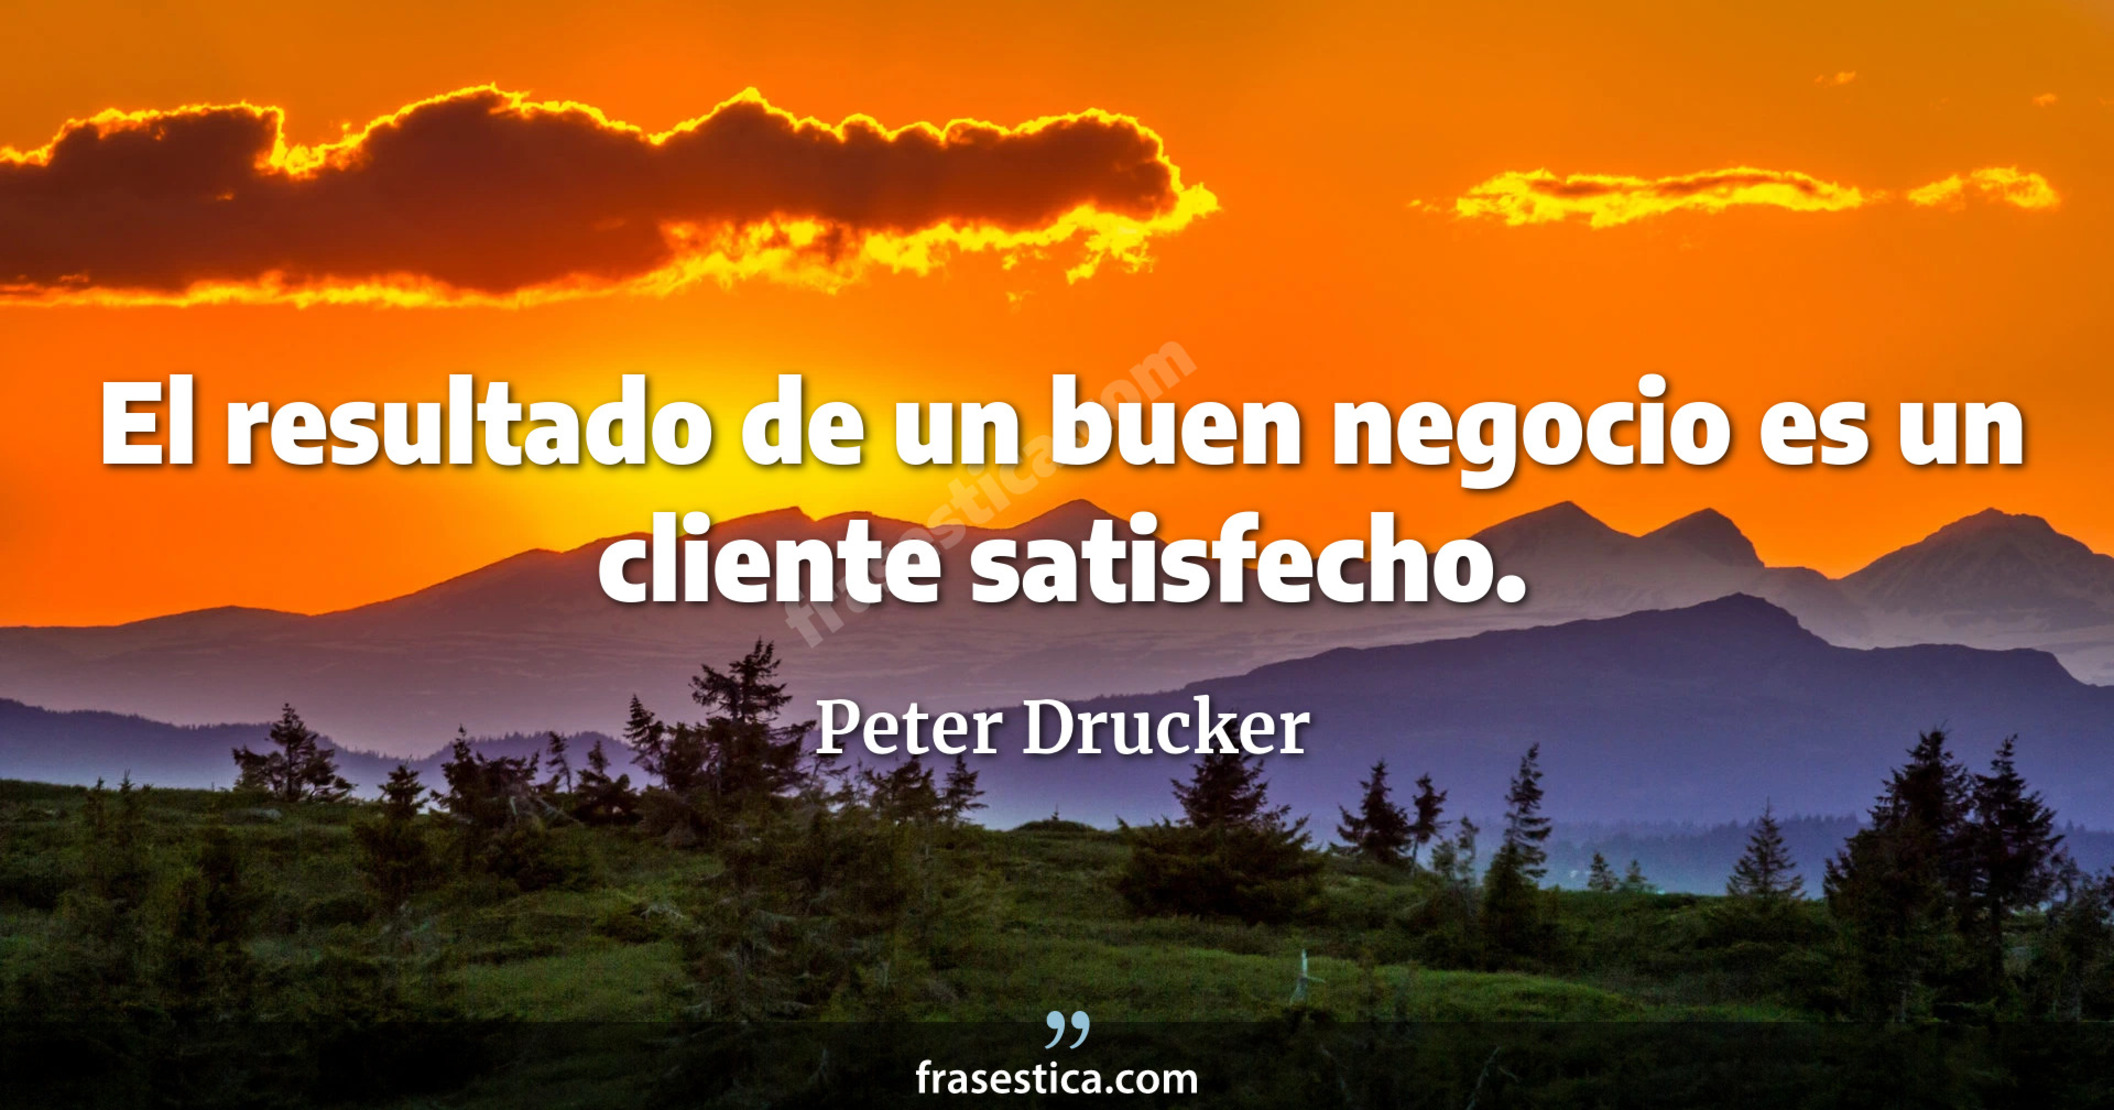 El resultado de un buen negocio es un cliente satisfecho. - Peter Drucker